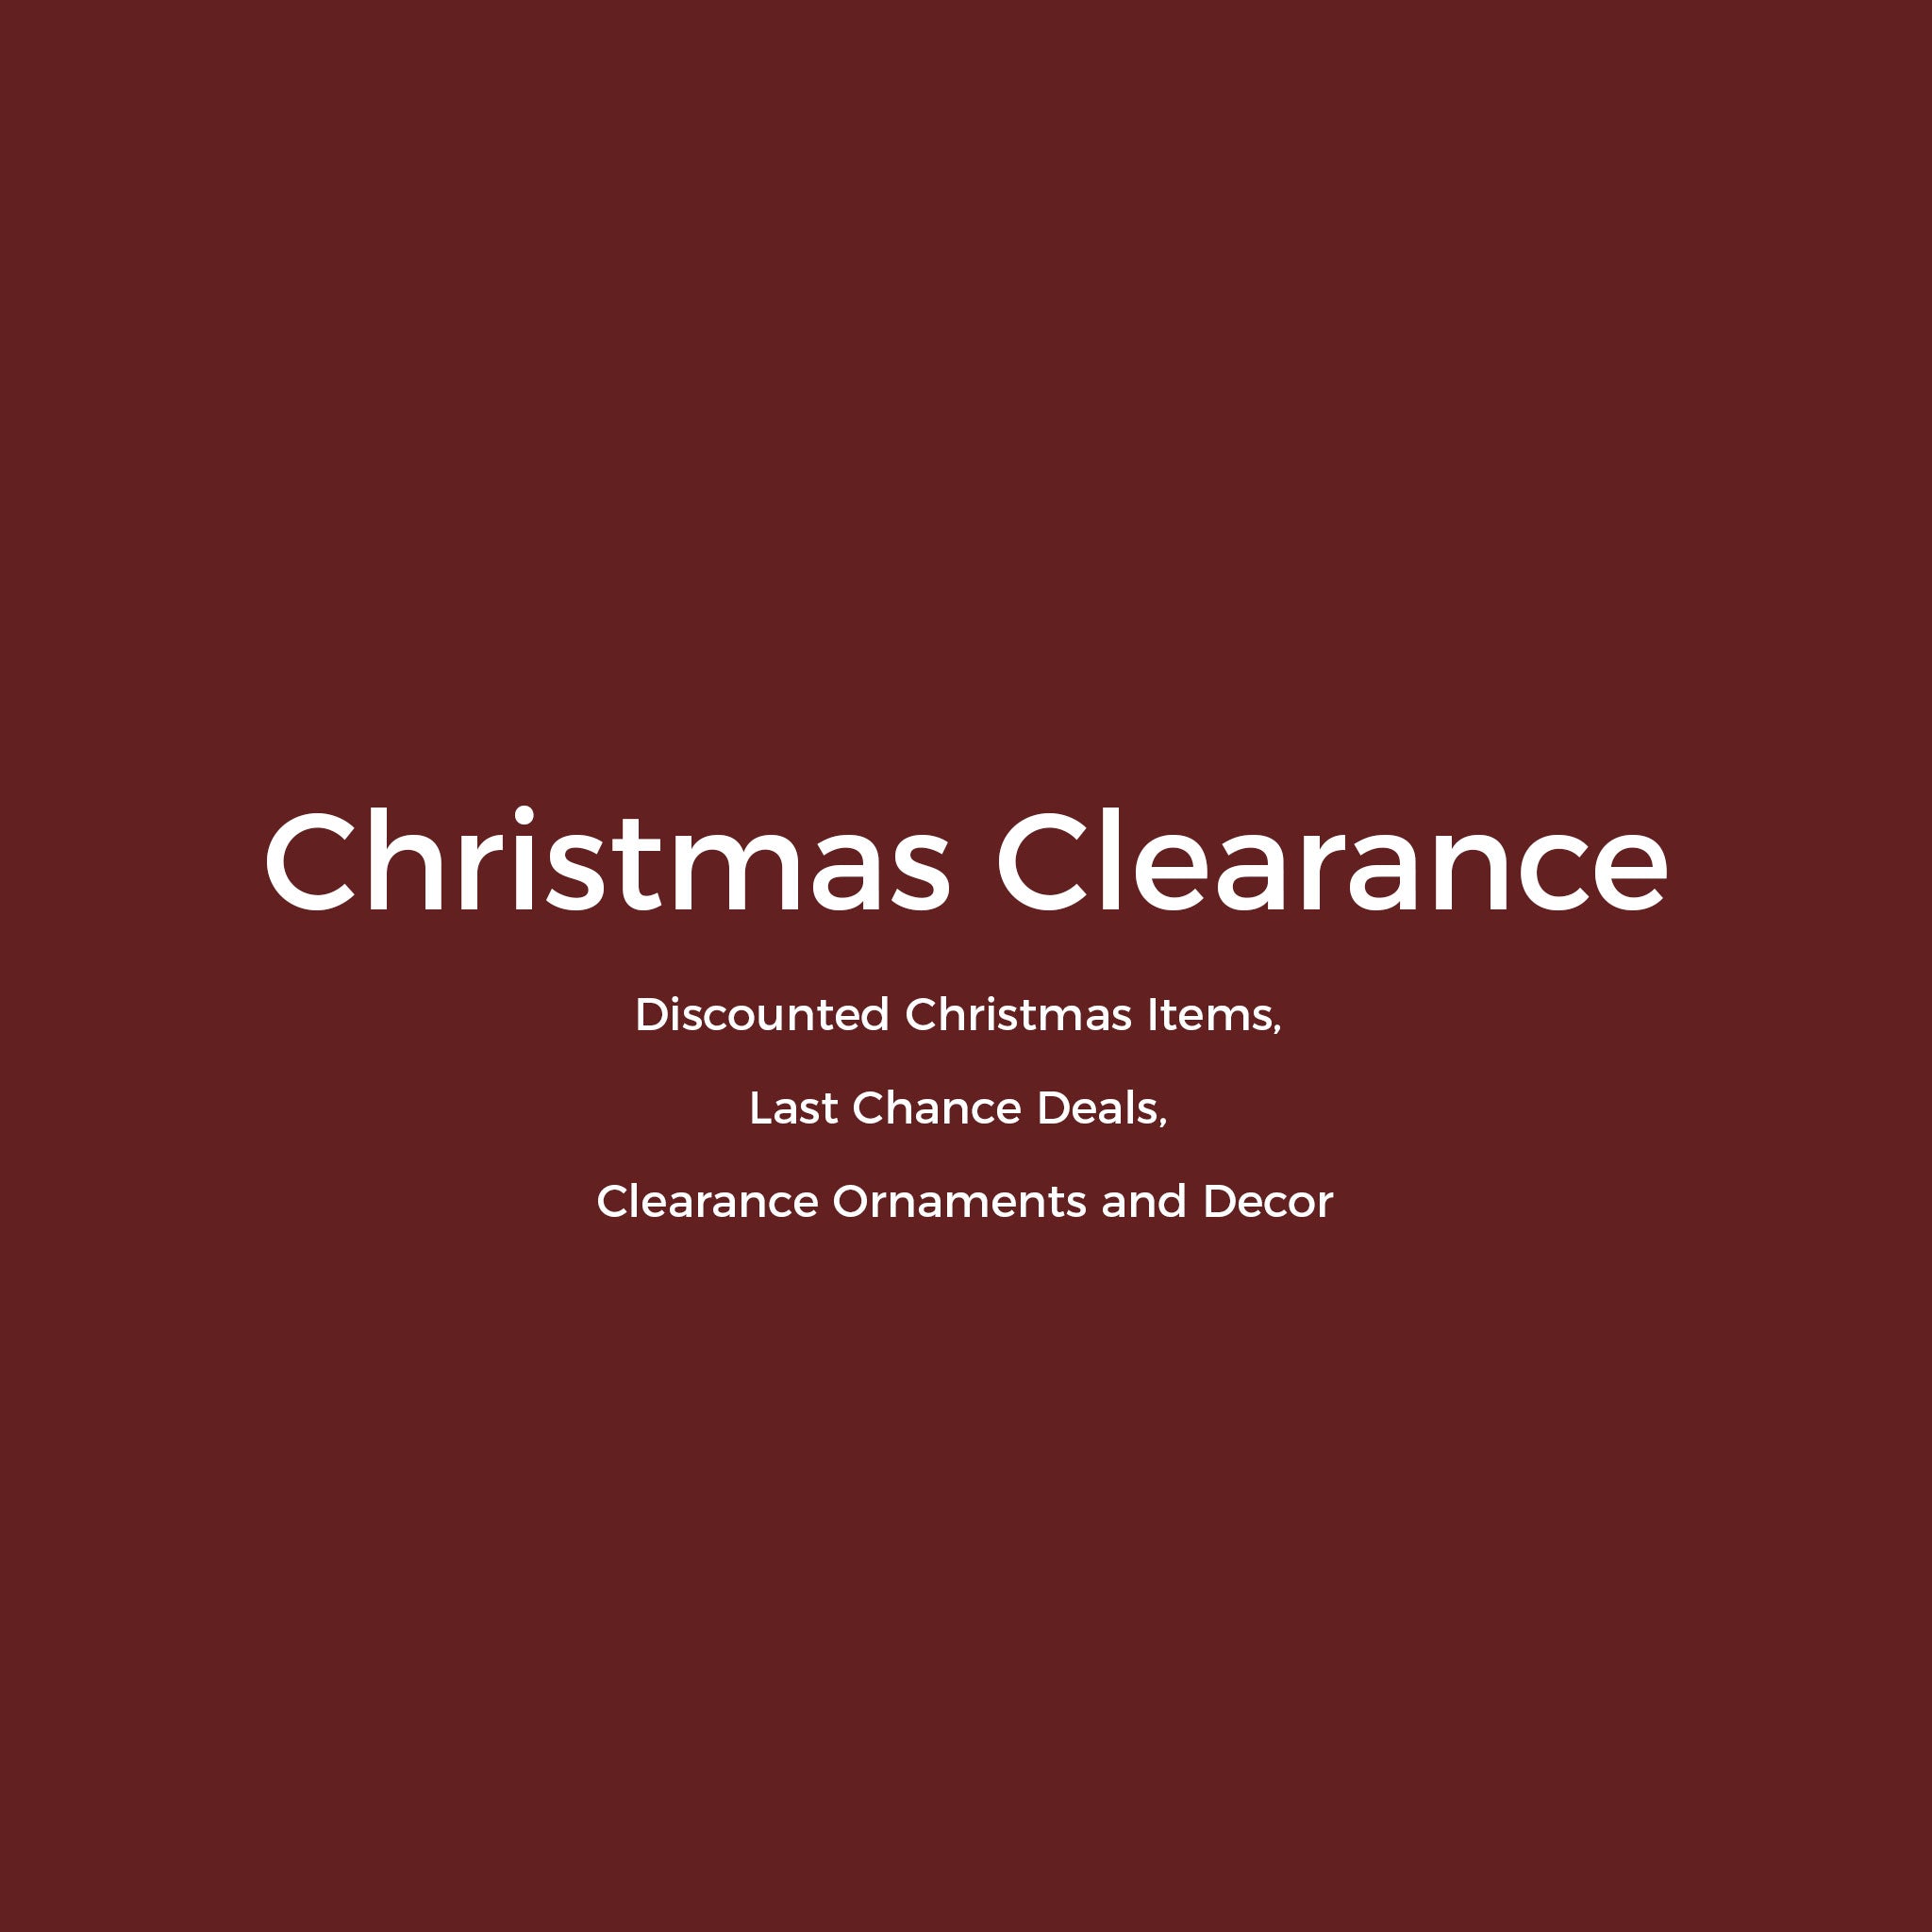 Christmas Clearance